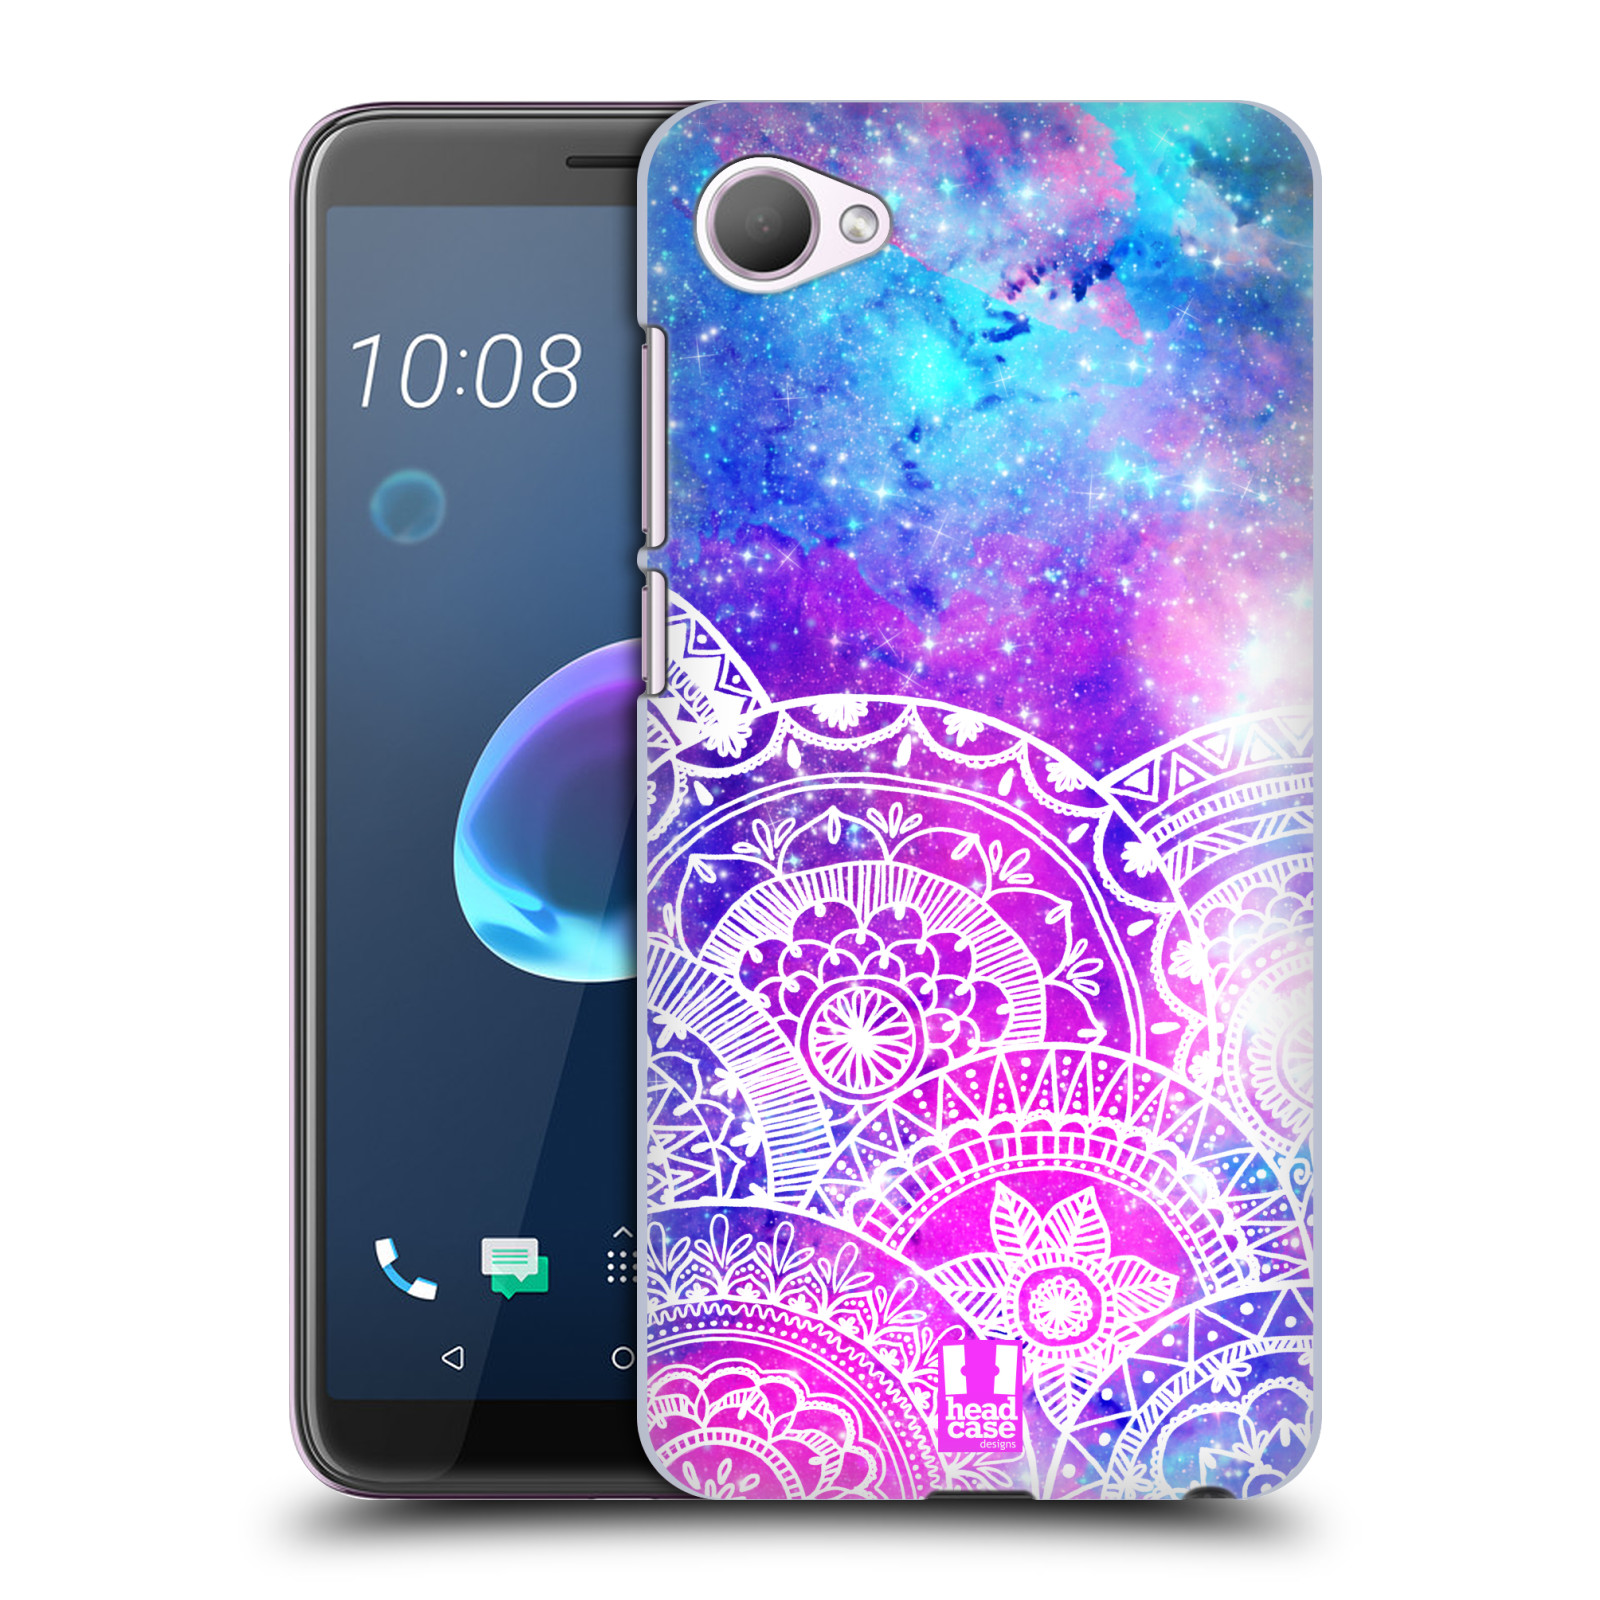 Pouzdro na mobil HTC Desire 12 / Desire 12 DUAL SIM - HEAD CASE - Mandala nekonečná galaxie